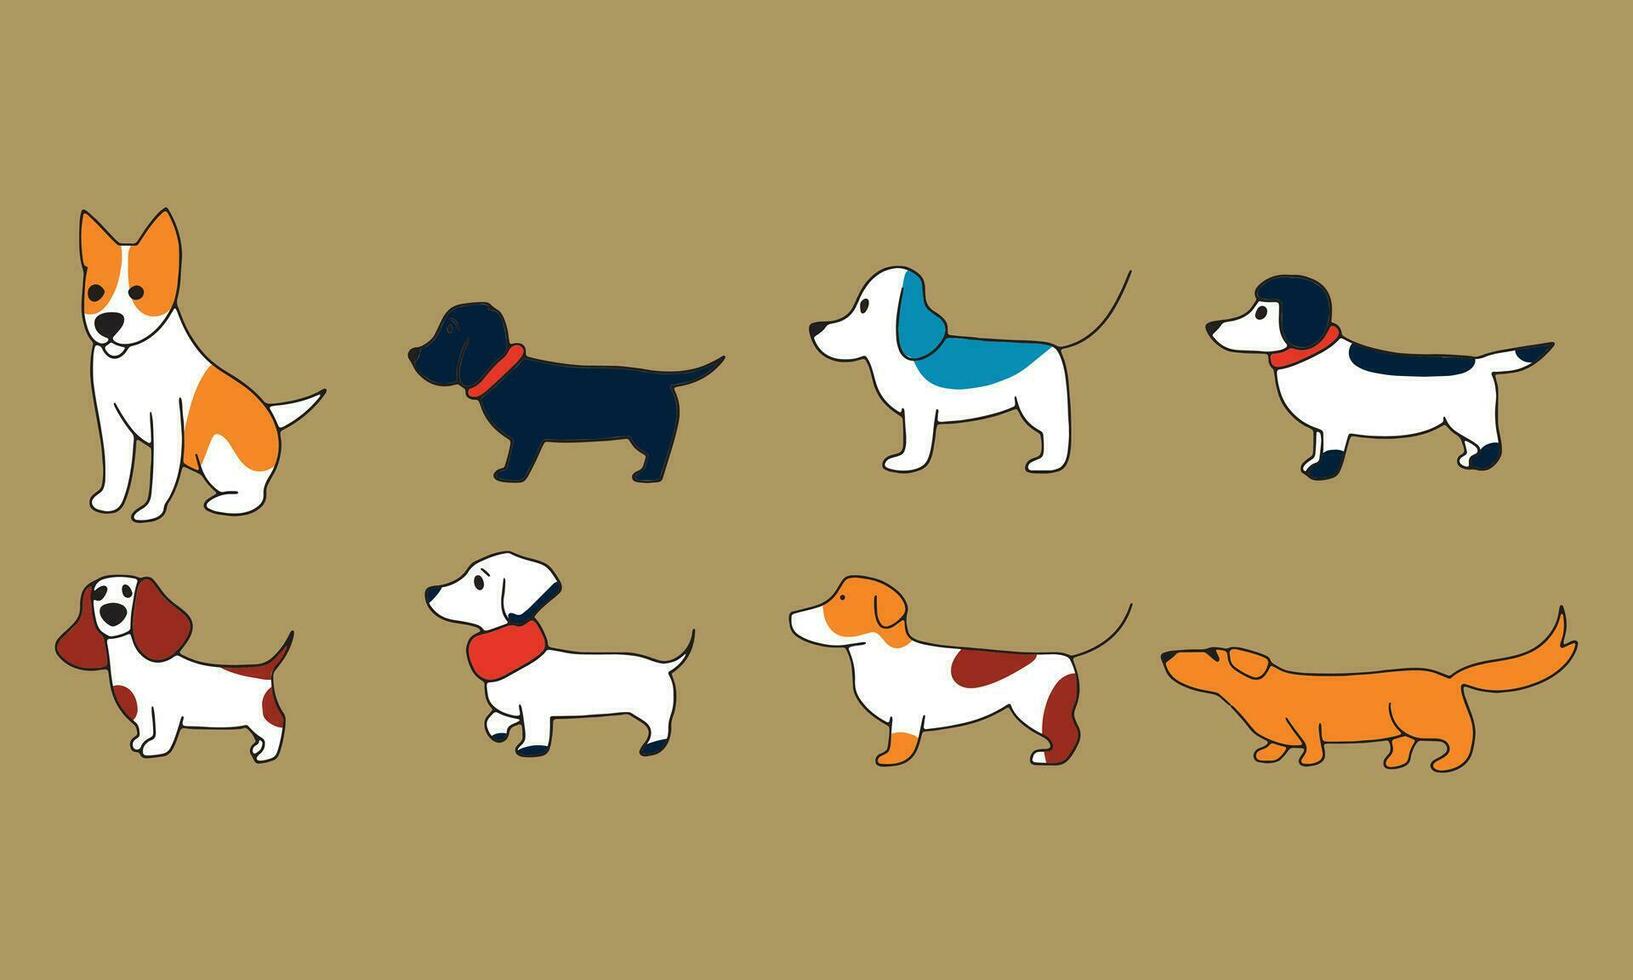 einstellen von einfach Hund Kritzeleien Vektor Illustration. Zeichnung Skizzen von anders Hund Rassen